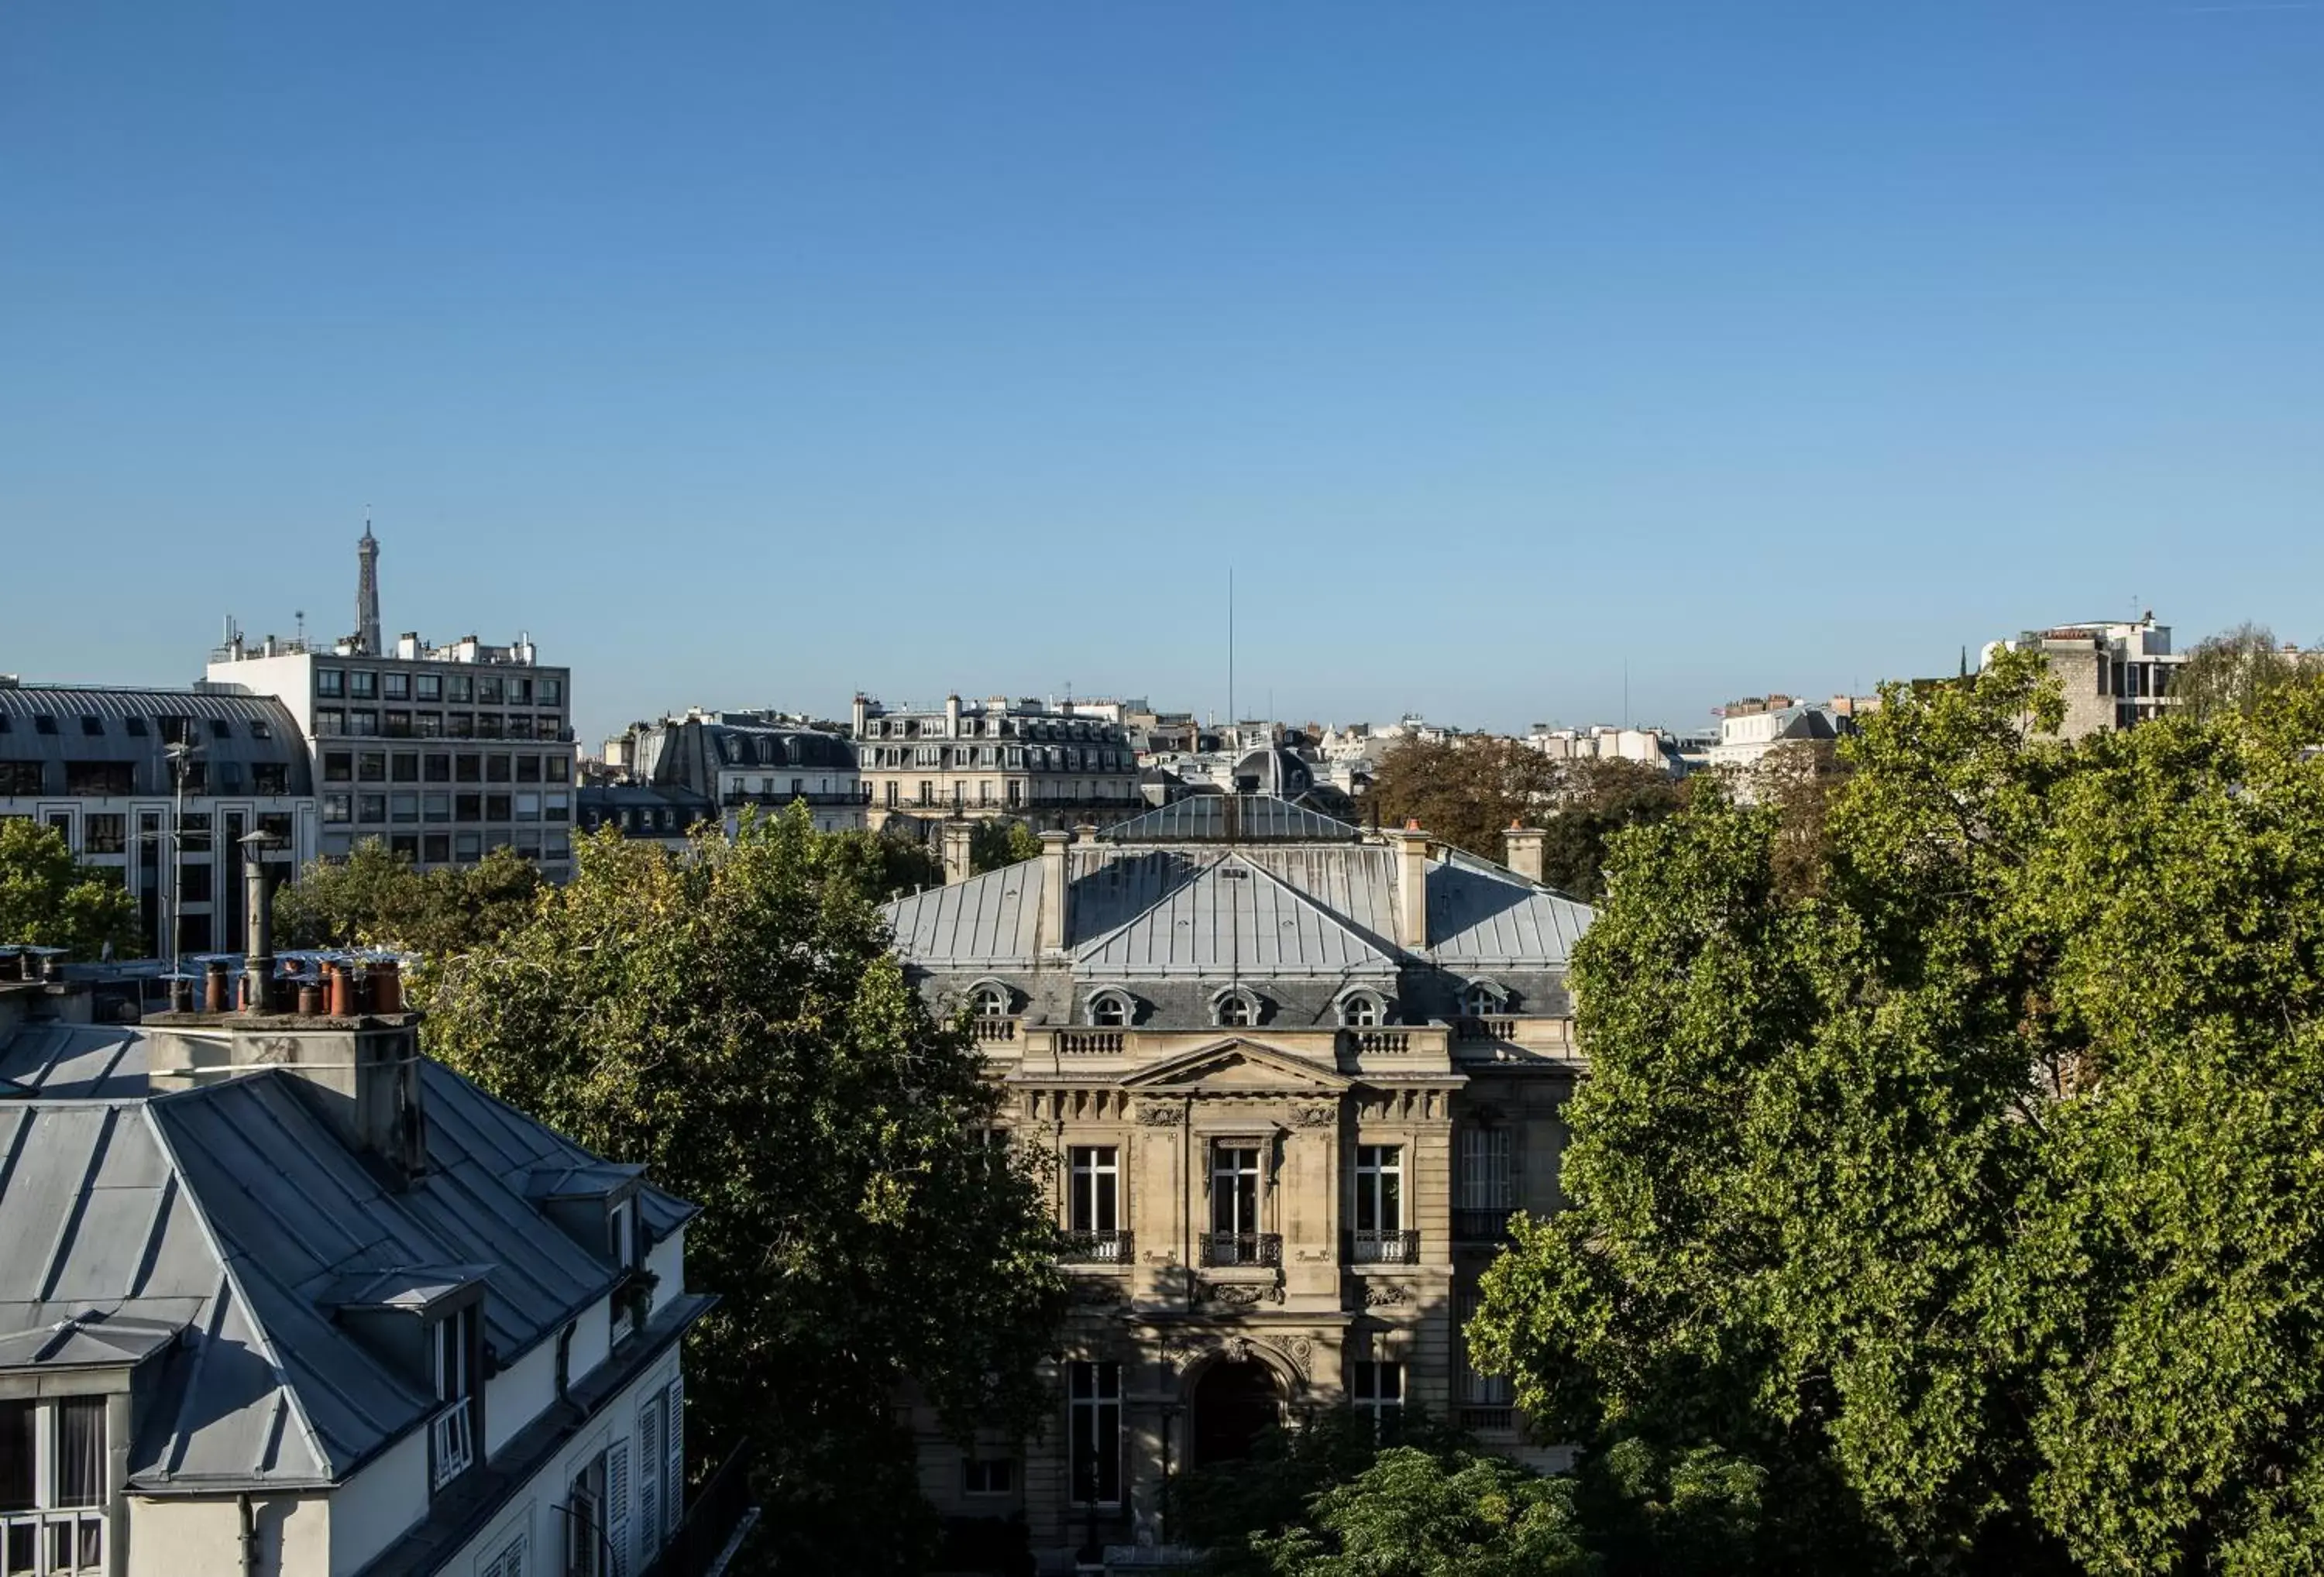 City view in Royal Garden Champs-Élysées